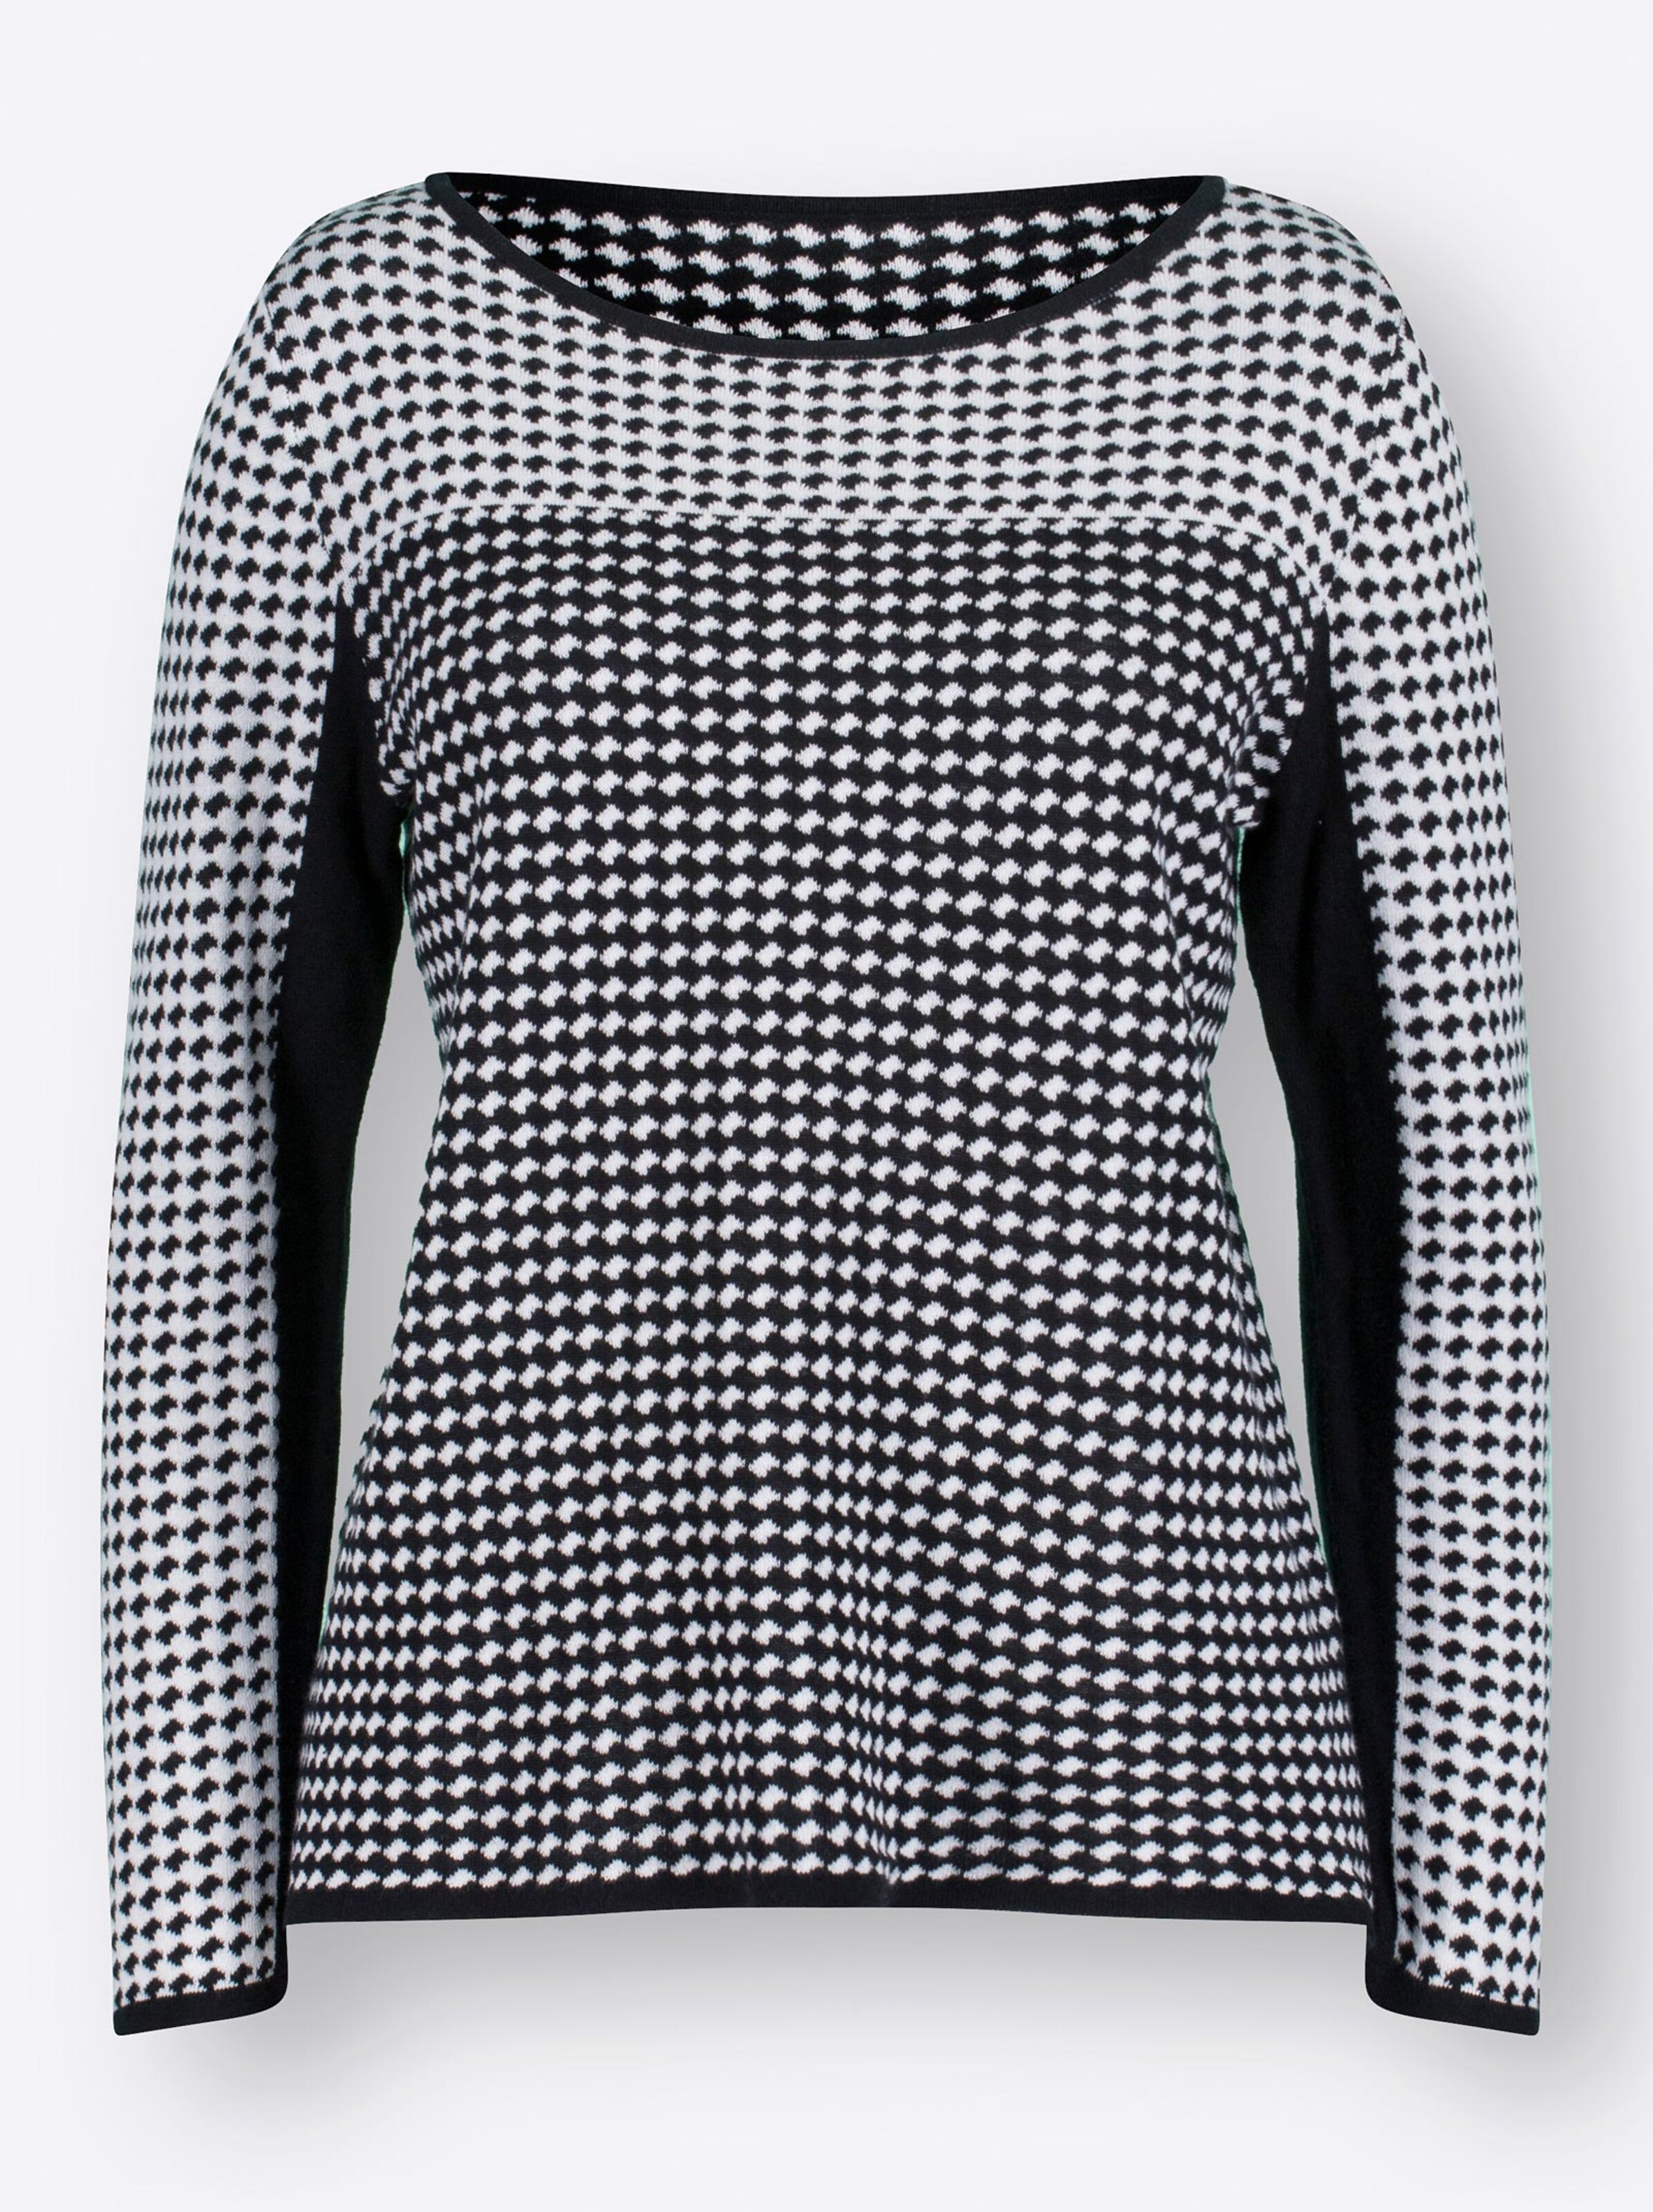 Damenmode Pullover Strickpullover in schwarz-weiß-gemustert 